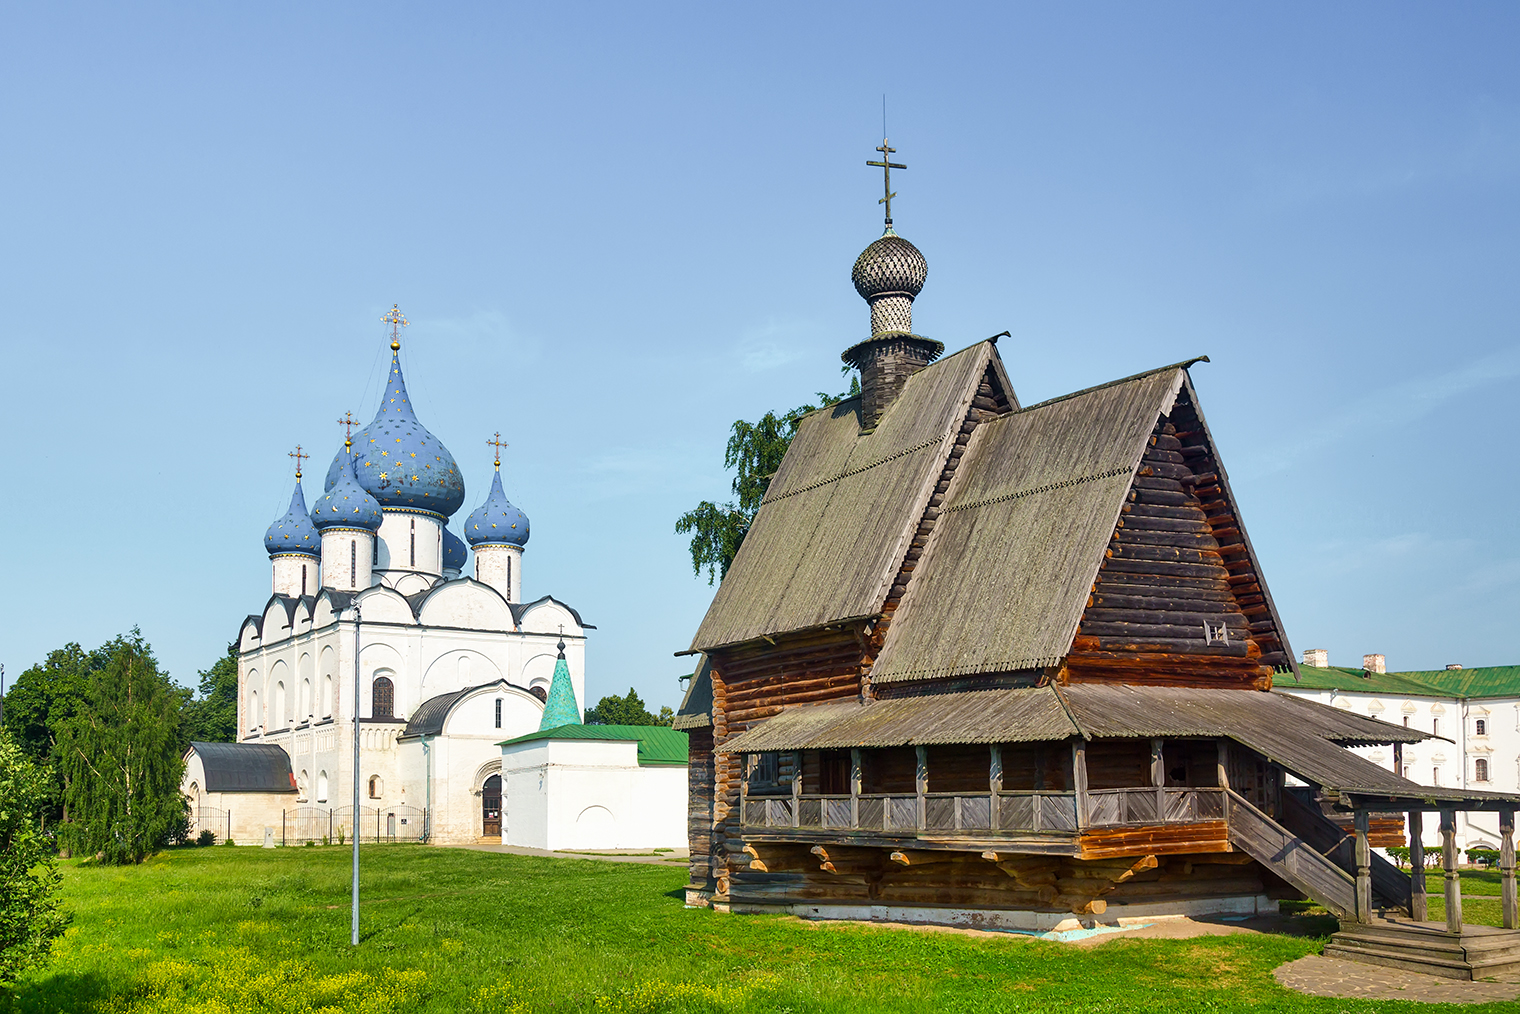 Удивительно, как на территории кремля соседствуют такие разные по стилю постройки. Фотография: Nick N A / Shutterstock / FOTODOM